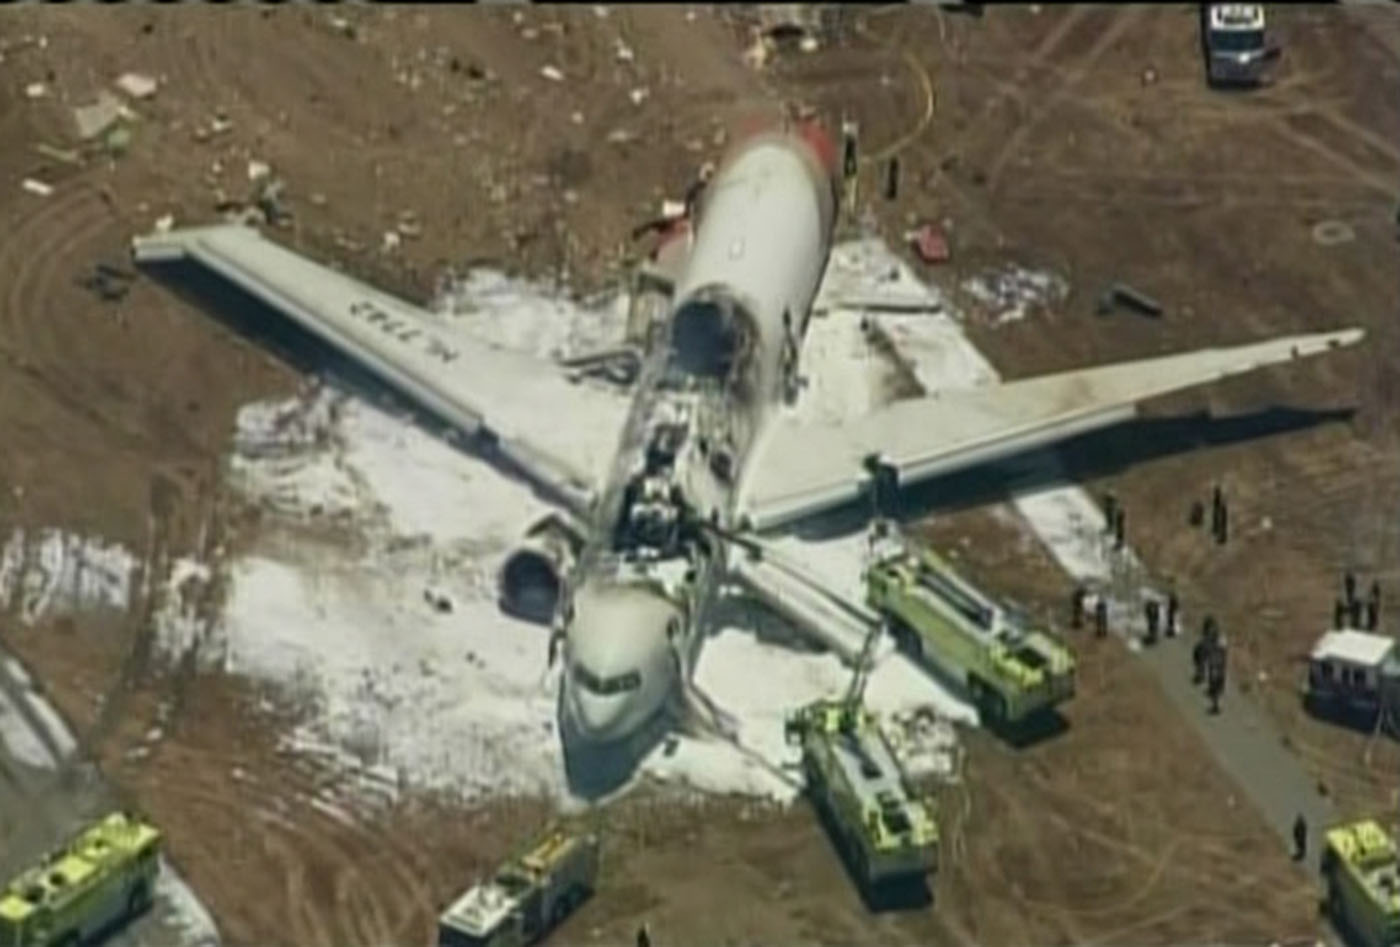 Una fallecida en el accidente de avión pudo ser atropellada por la ambulancia